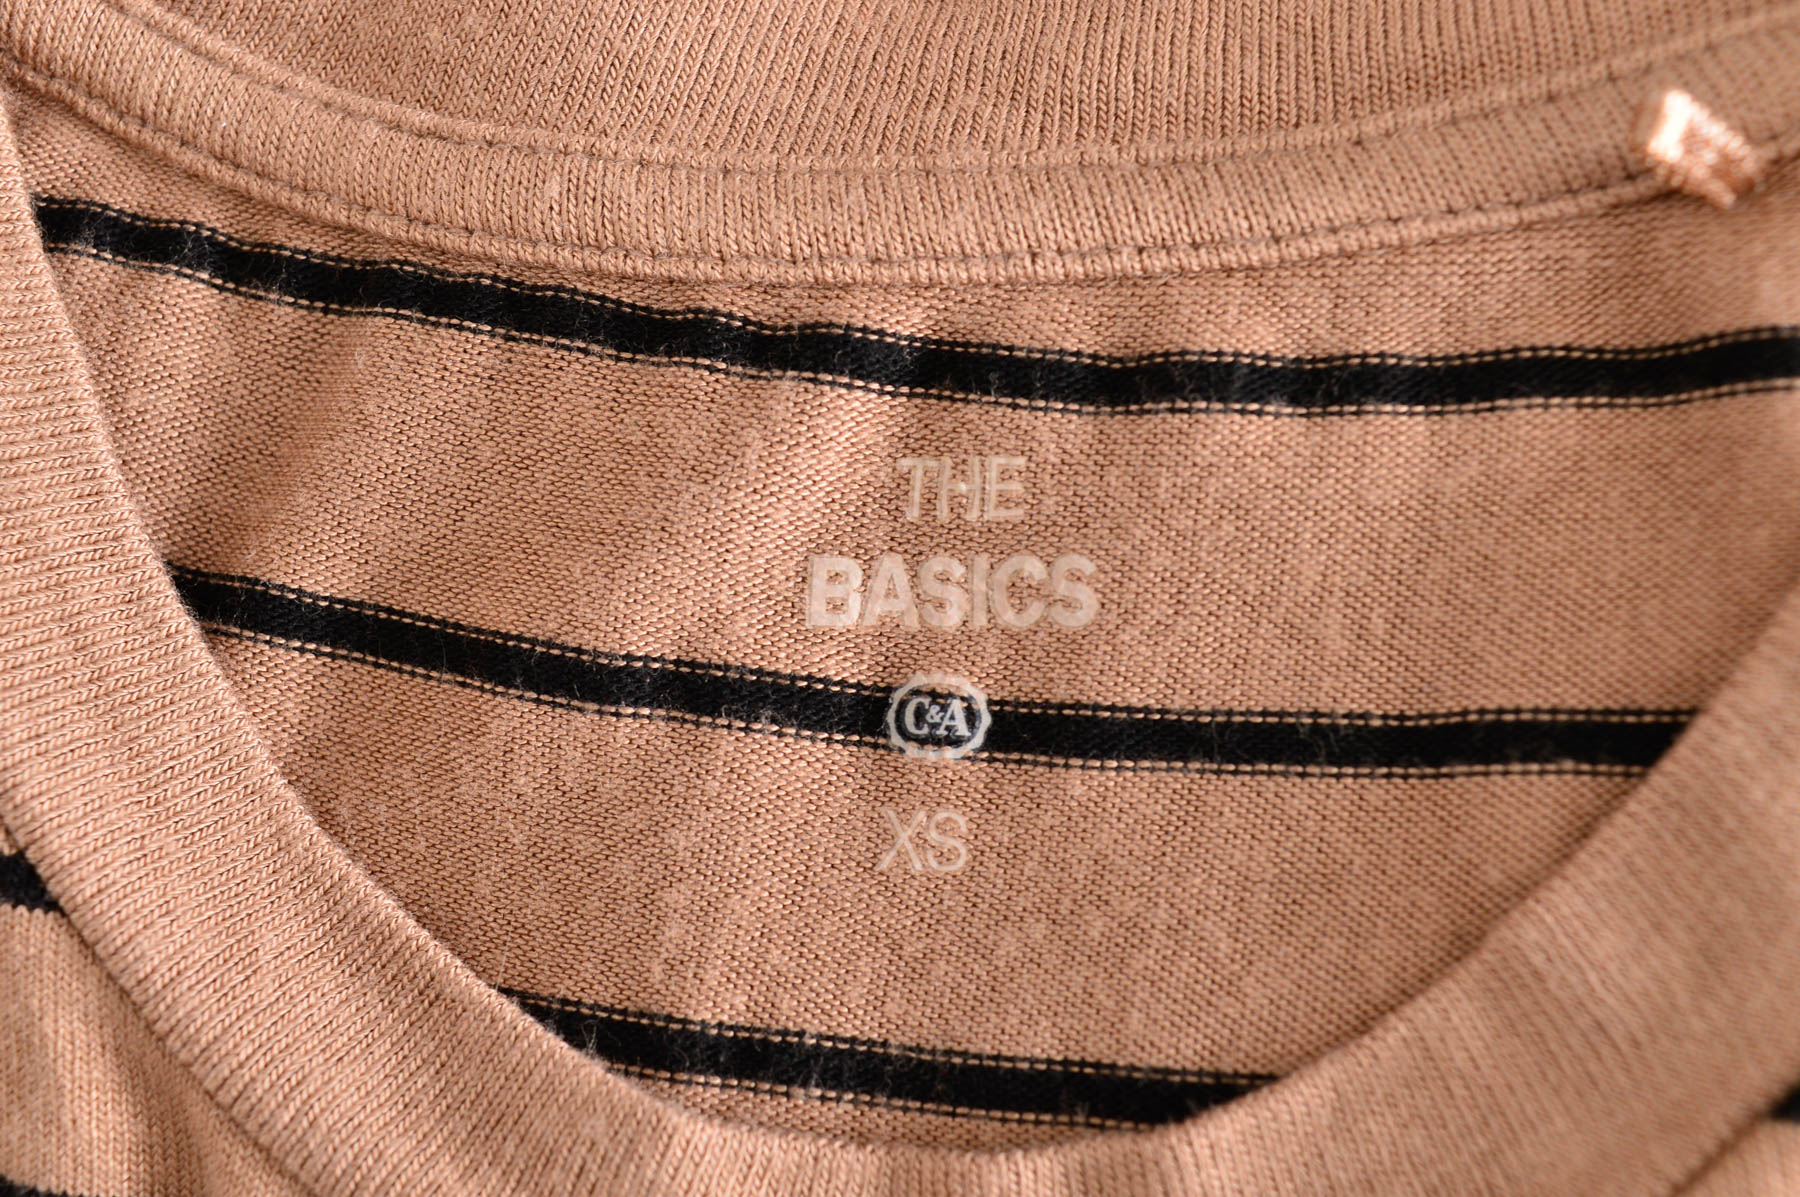 Дамски пуловер - The Basics x C&A - 2